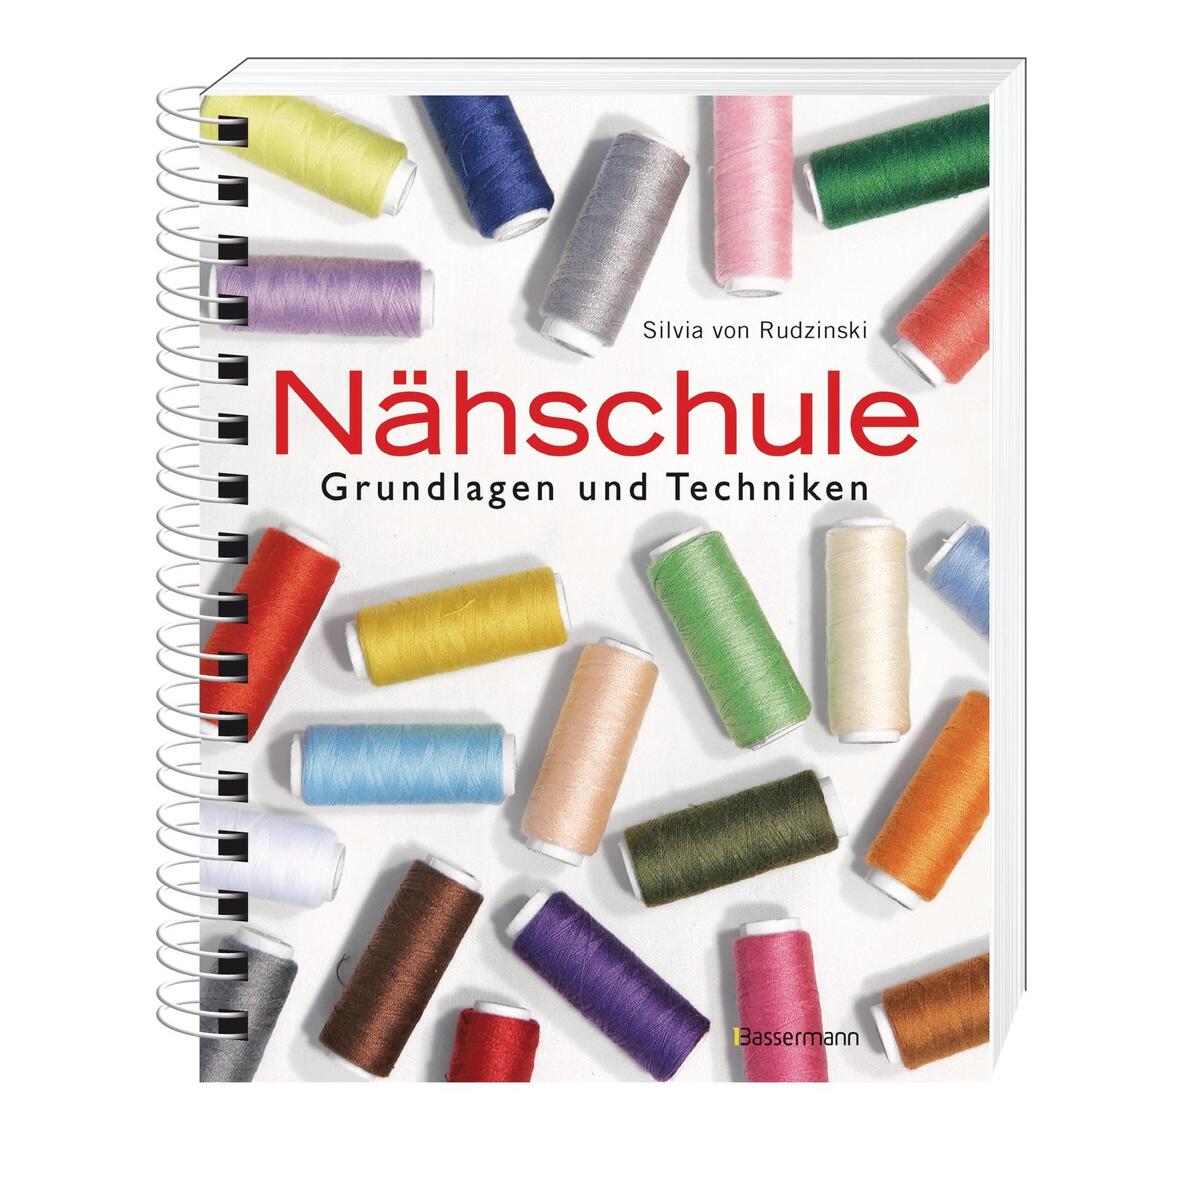 Nähschule von Bassermann Verlag